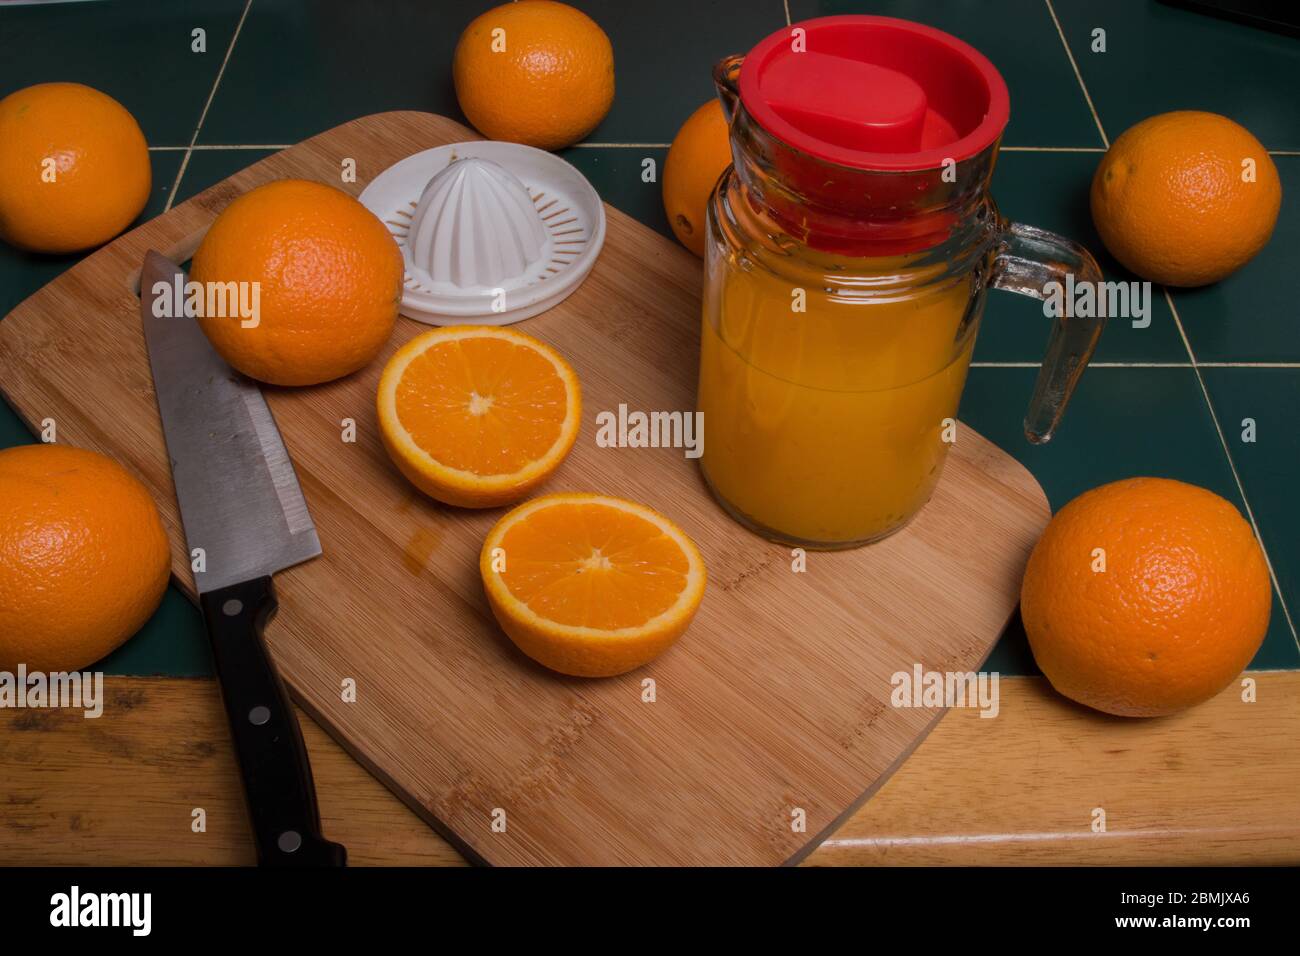 Vista isometrica delle arance su tagliere di legno con coltello e succo d'arancia Foto Stock